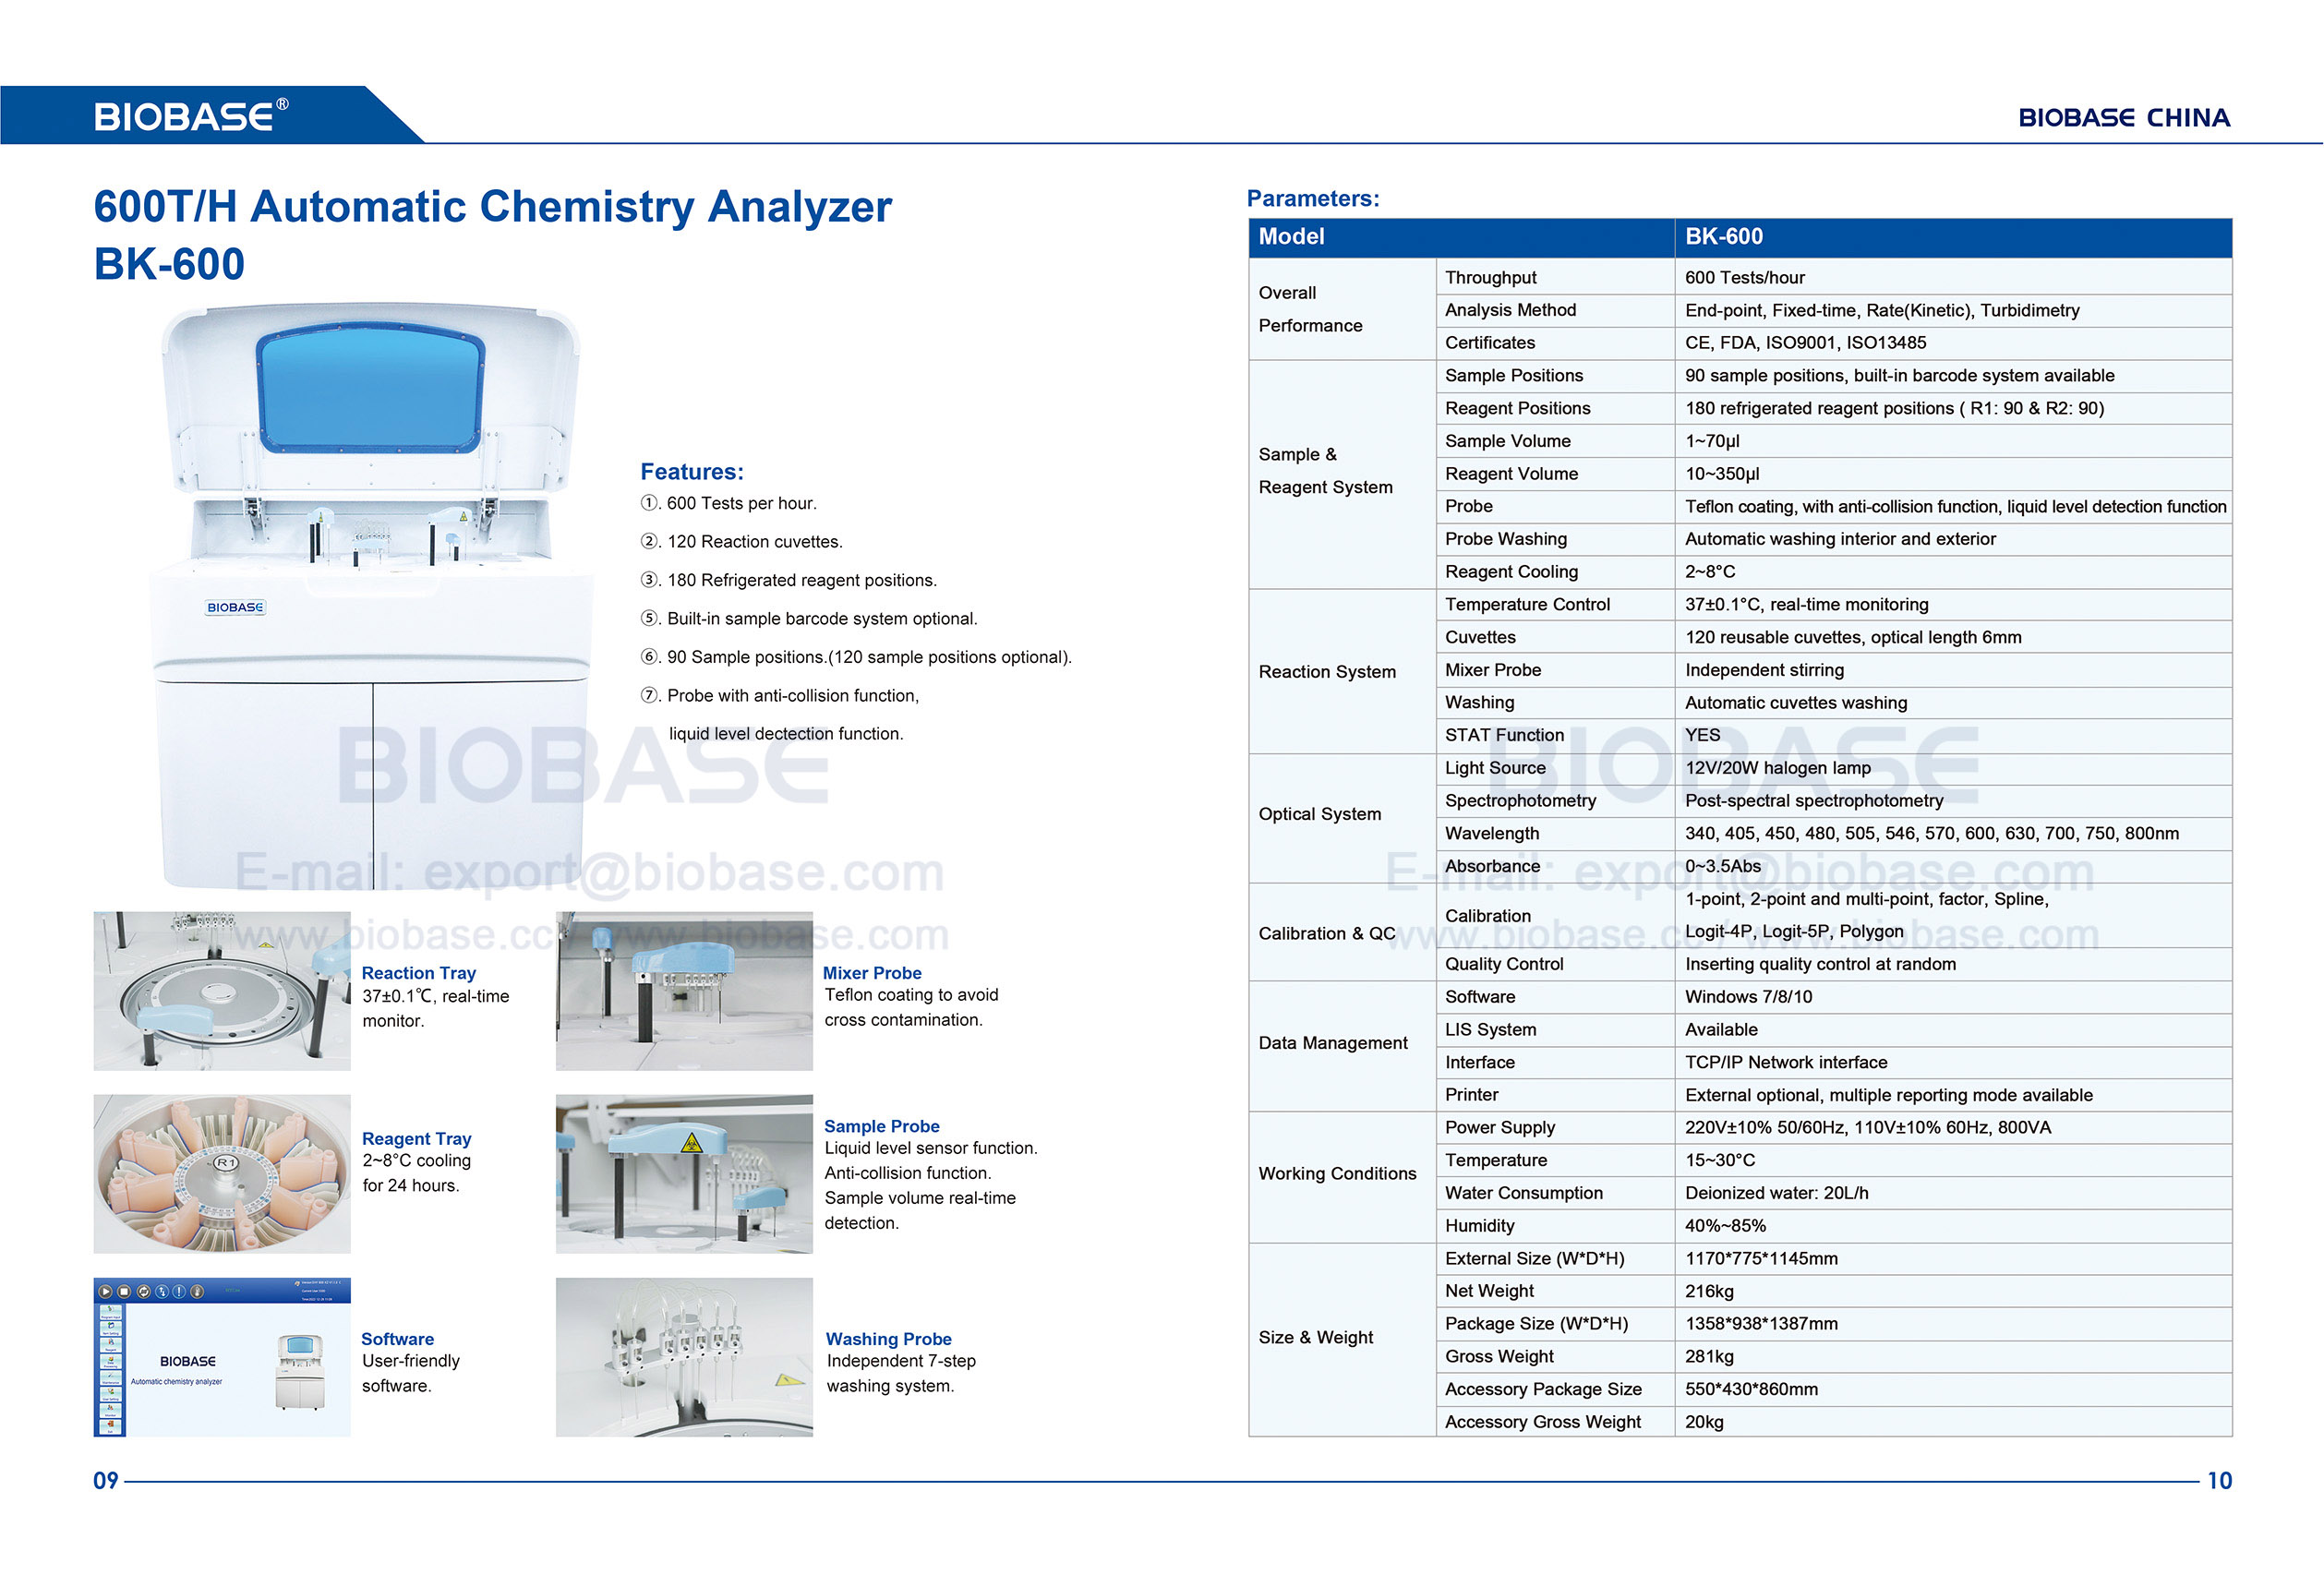 09-10 BK600 Automatic Chemistry Analyzer